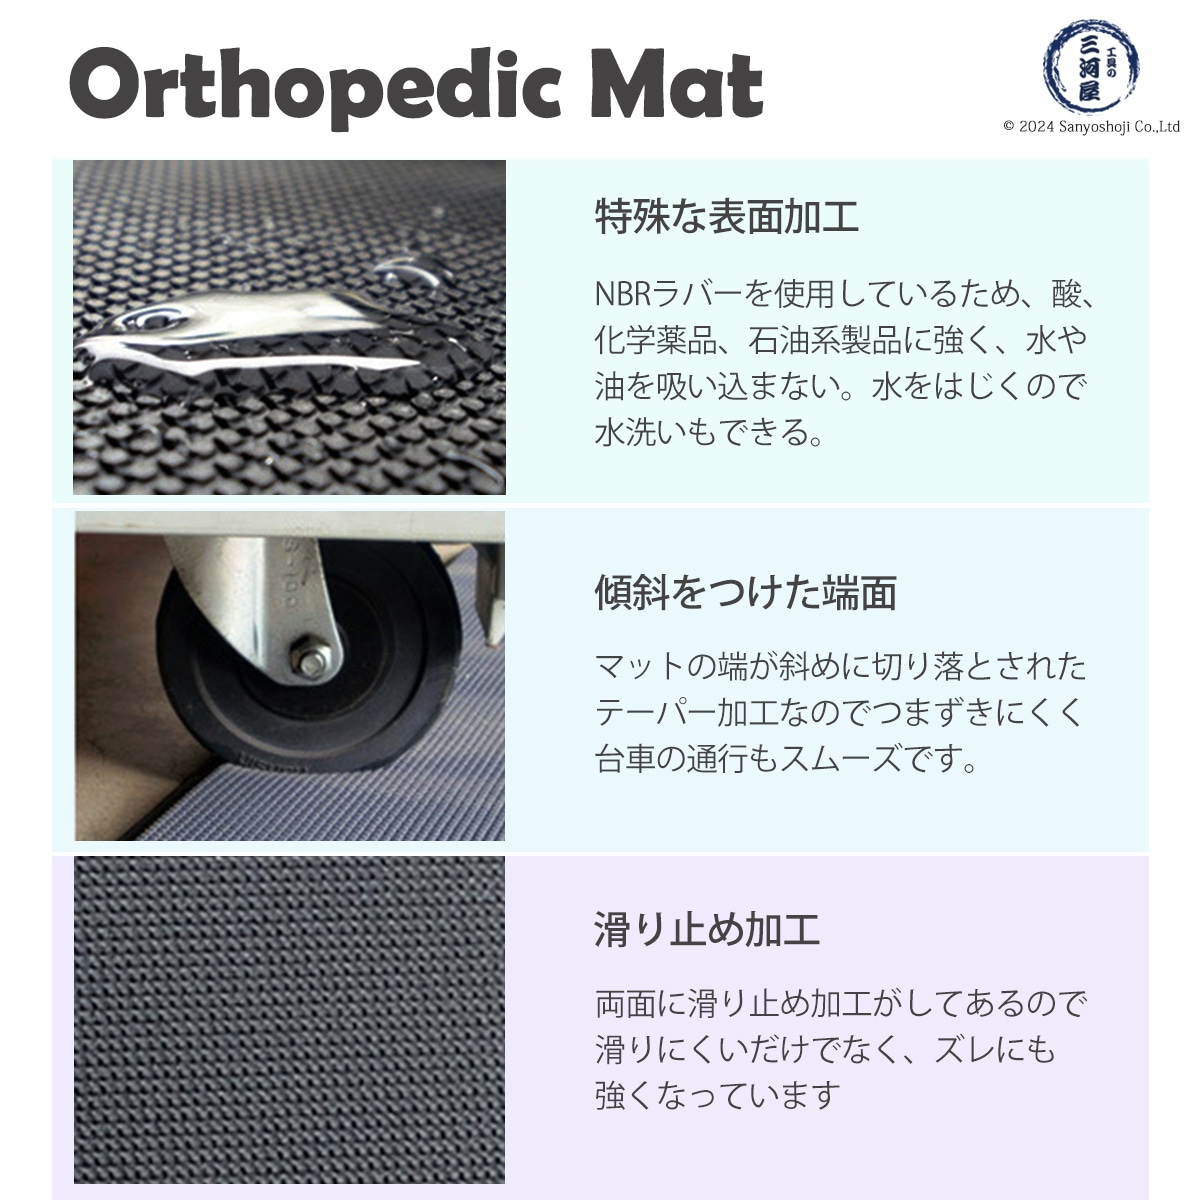 Orthopedic Mat　3つの特徴